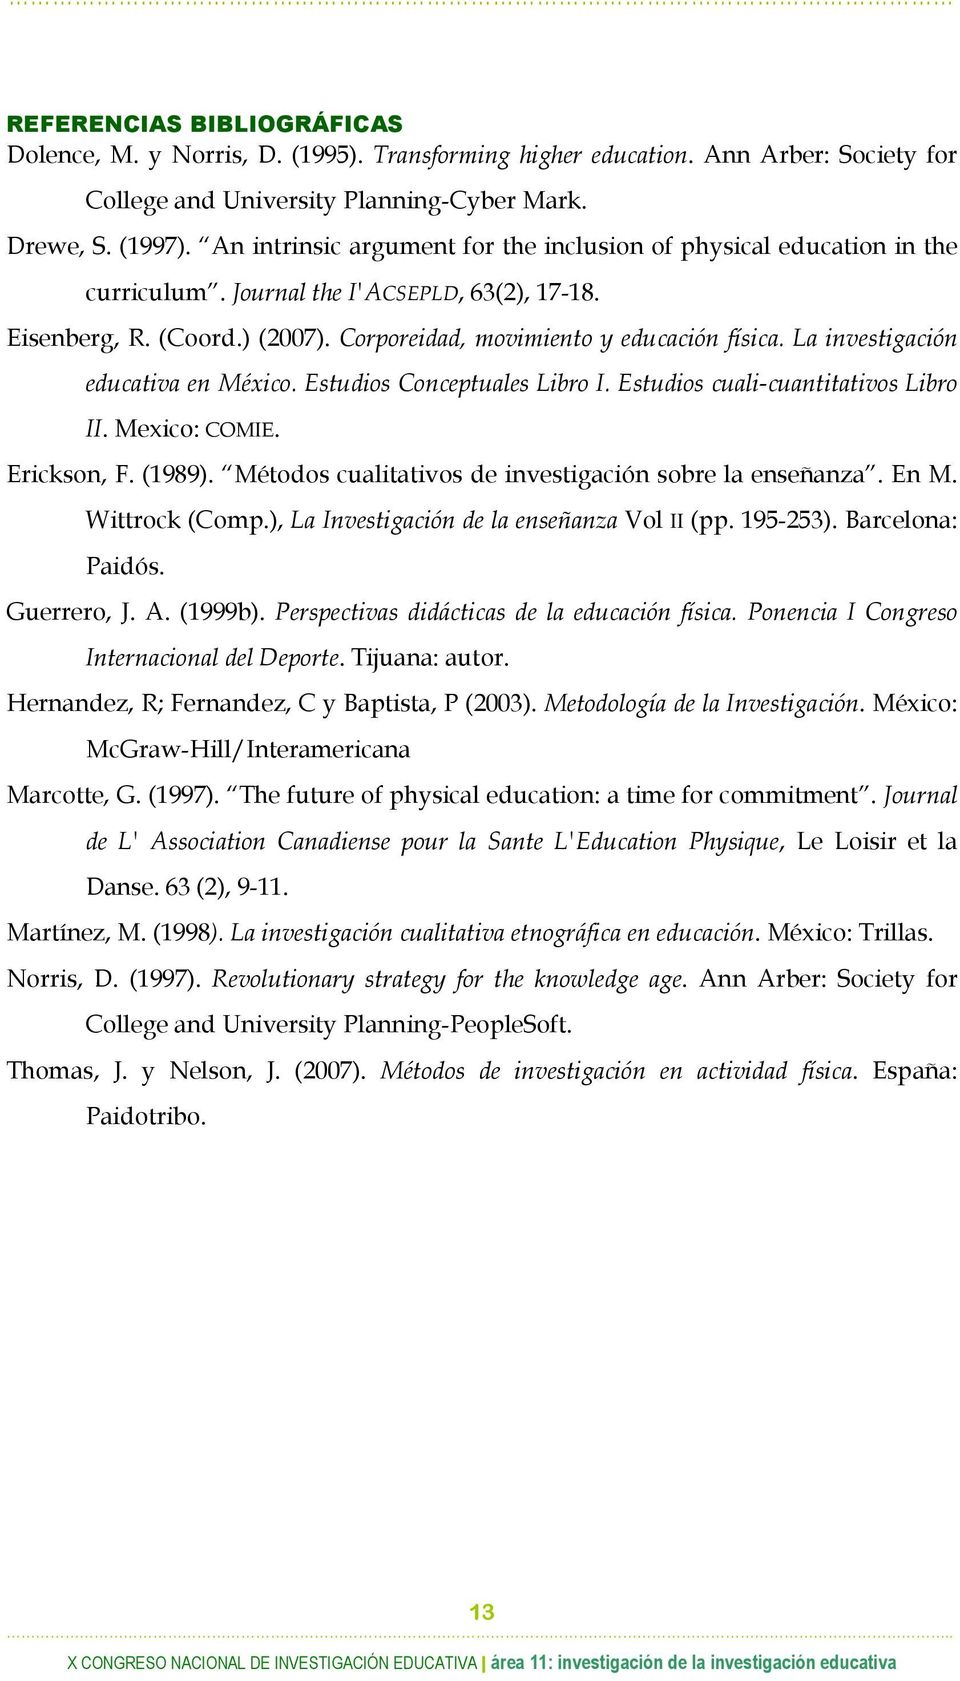 La investigación educativa en México. Estudios Conceptuales Libro I. Estudios cuali-cuantitativos Libro II. Mexico: COMIE. Erickson, F. (1989).